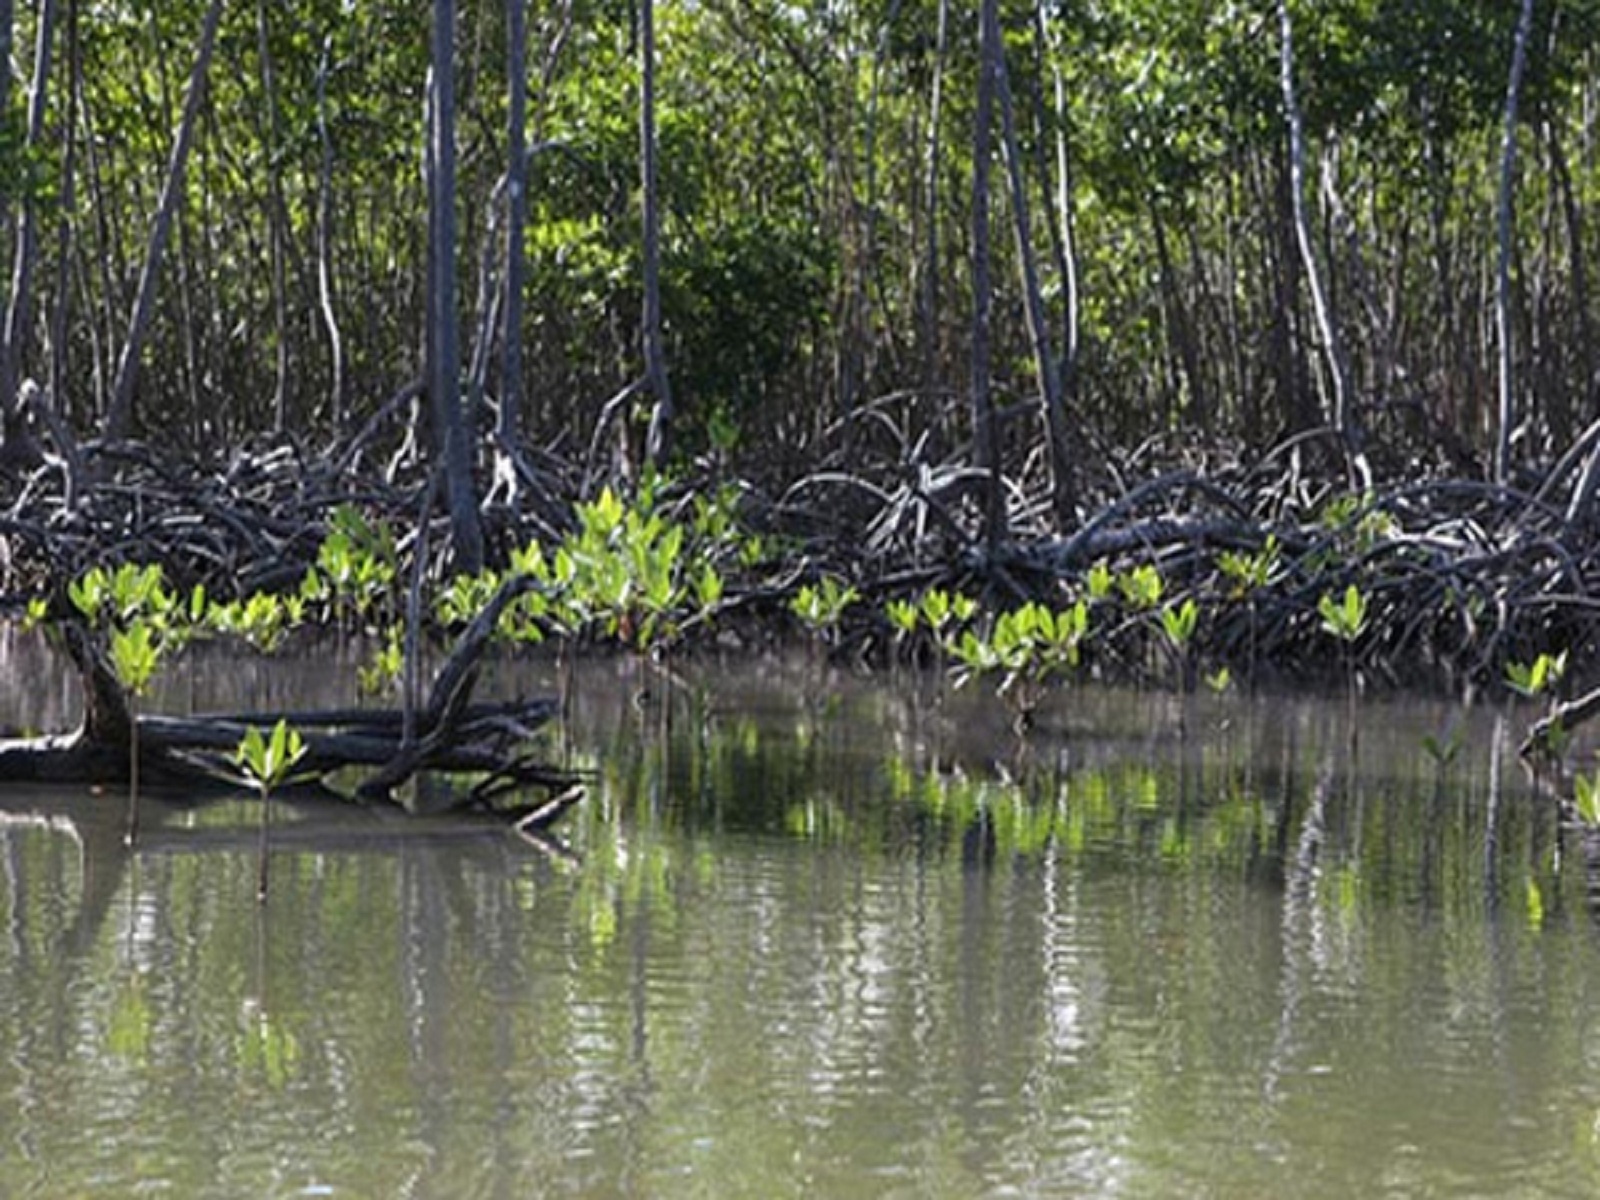 Proyecto para determinar la situación de los manglares, que resultan vitales para la protección de las costas. Autor: Juventud Rebelde Publicado: 21/09/2017